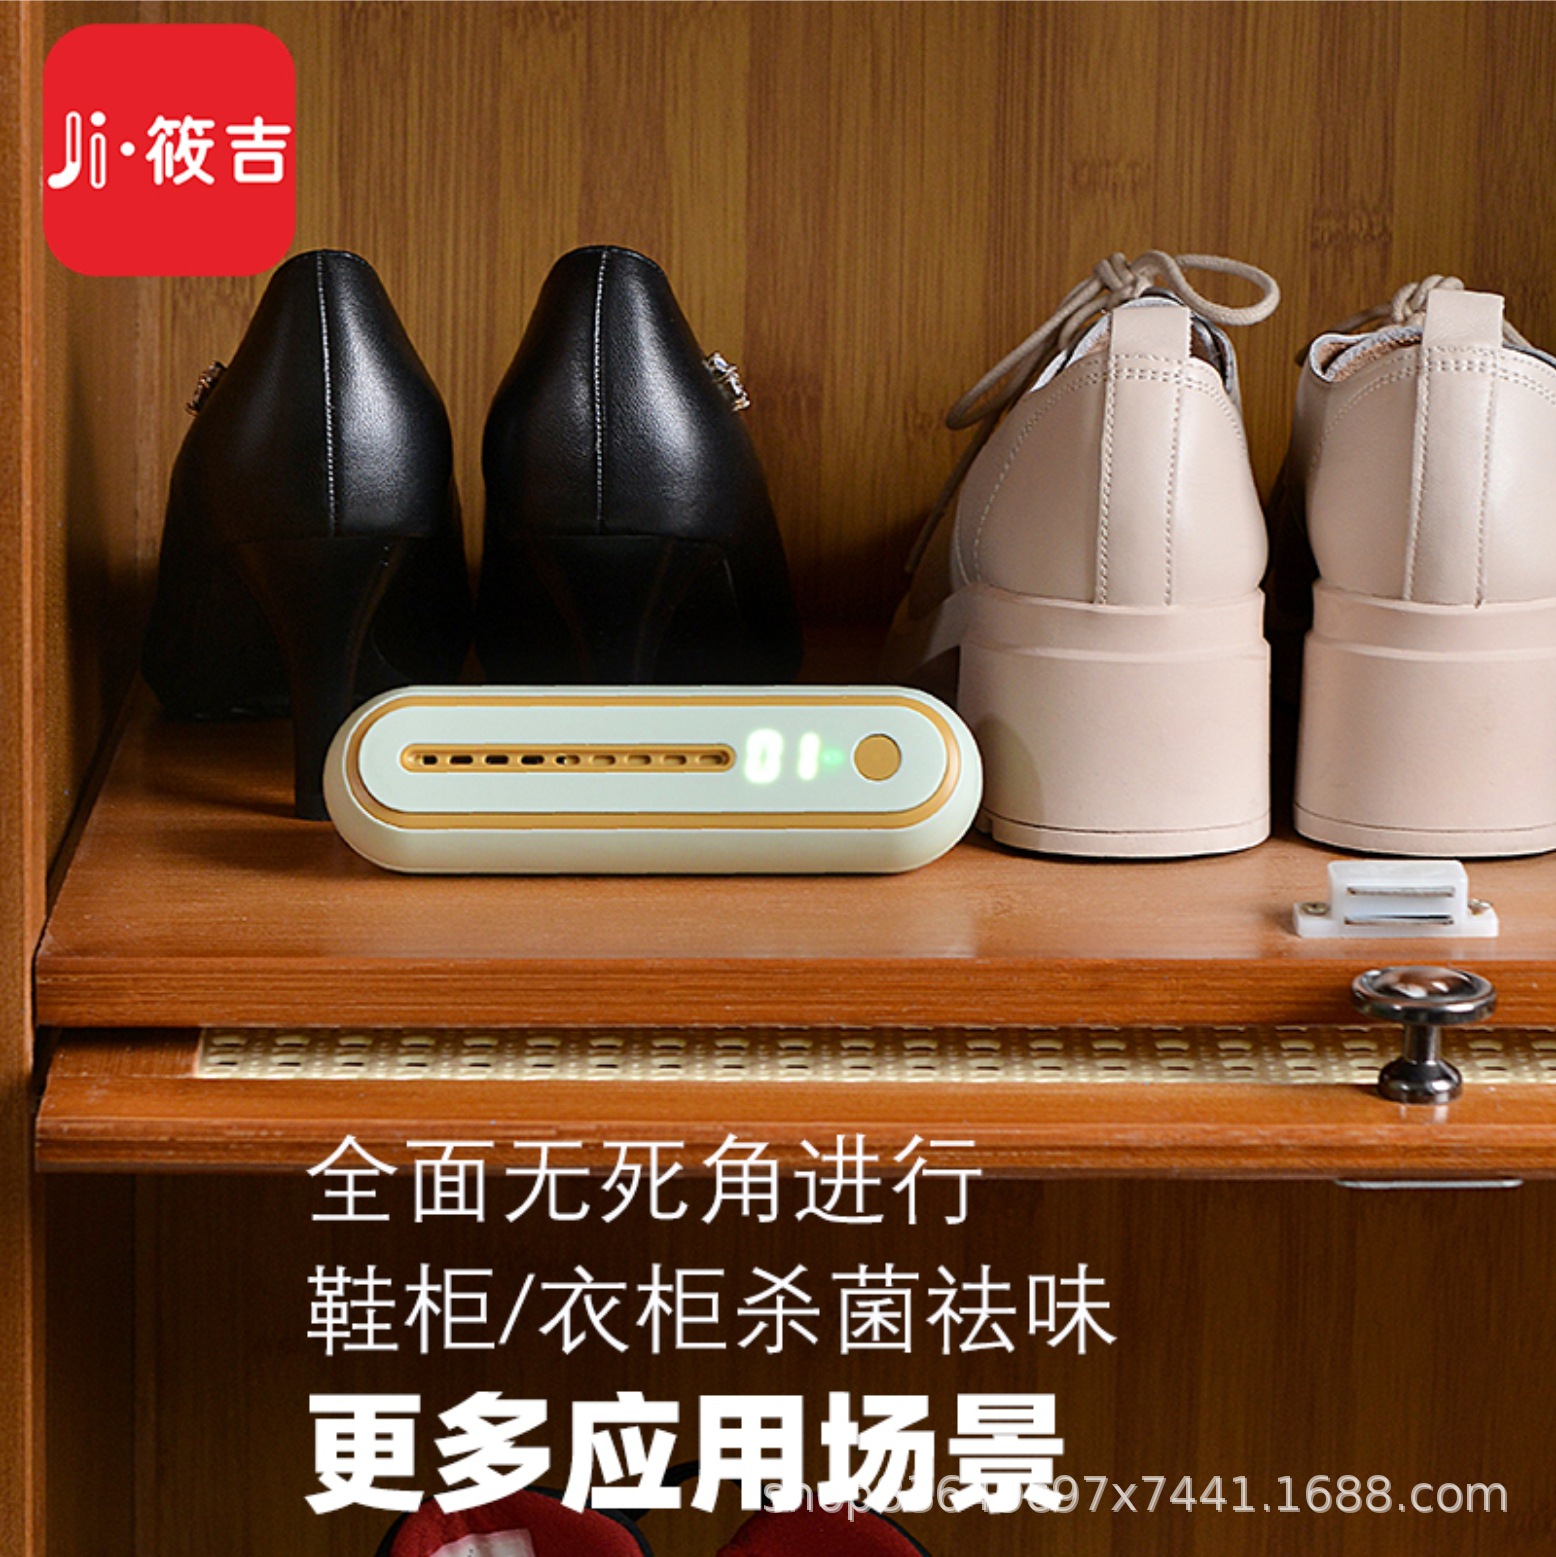 冰箱除味器家用便携式臭氧杀菌祛味可看电量档位鞋柜衣柜空气净化